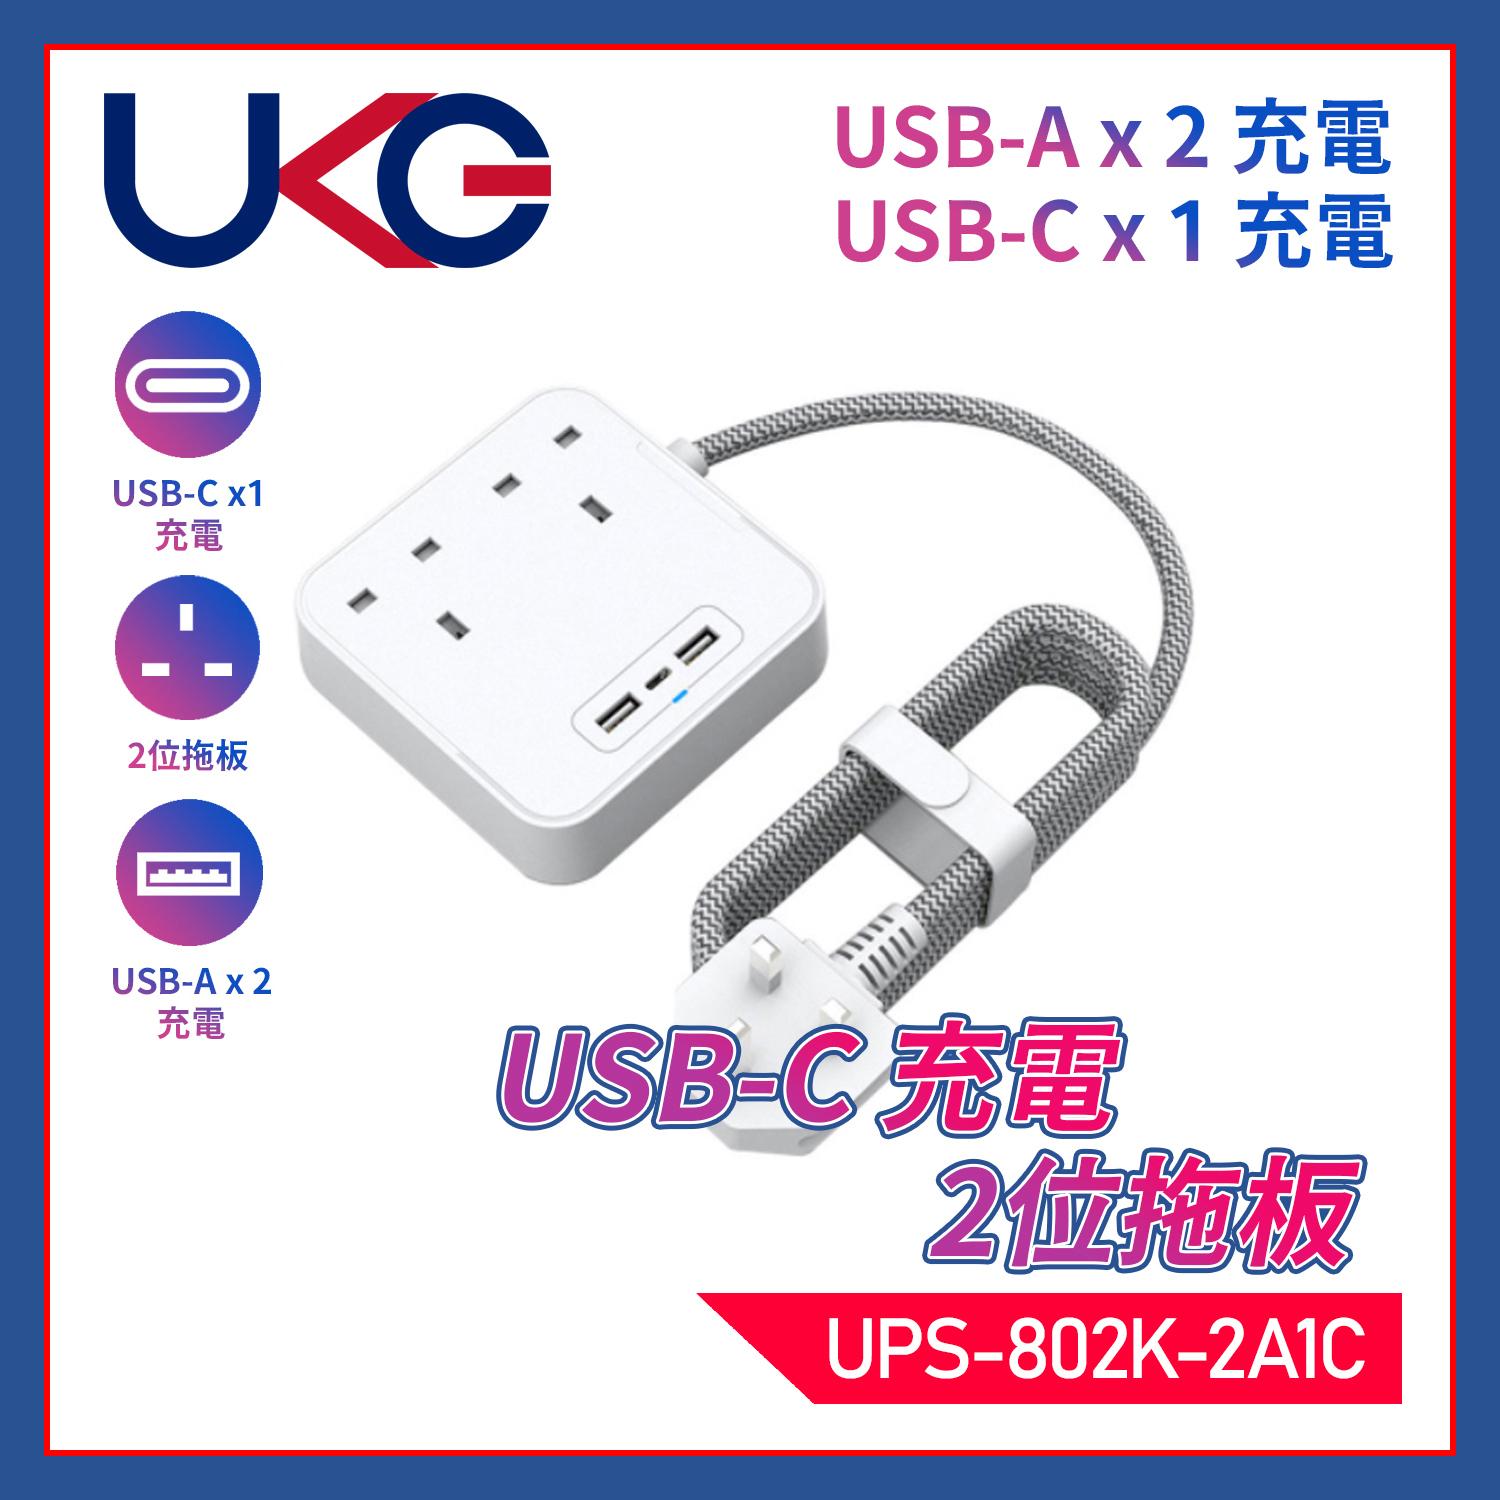 白色2位13A帶總開關+3USB(Type-Ax2+Type-Cx1)1.5米線時尚拖板，USB-A共享5V2.4A+USB-C獨享5V3.4A極速快充附魔術貼電線索帶(UPS-802K-2A1C)